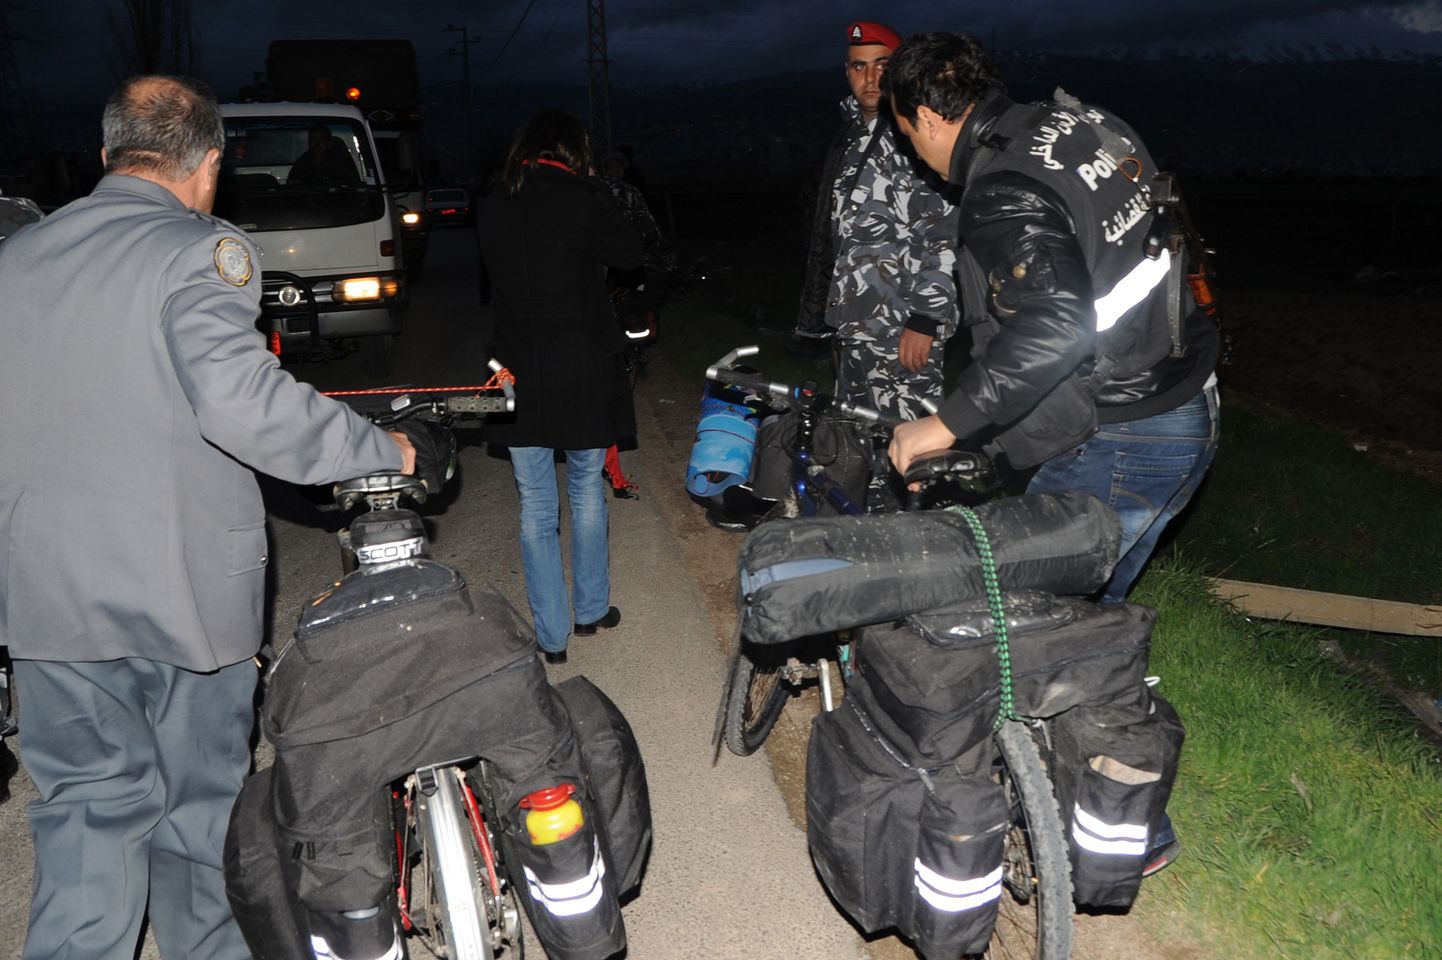 Liibanoni politseinikud pantvangi võetud Eesti kodanike jalgratastega.